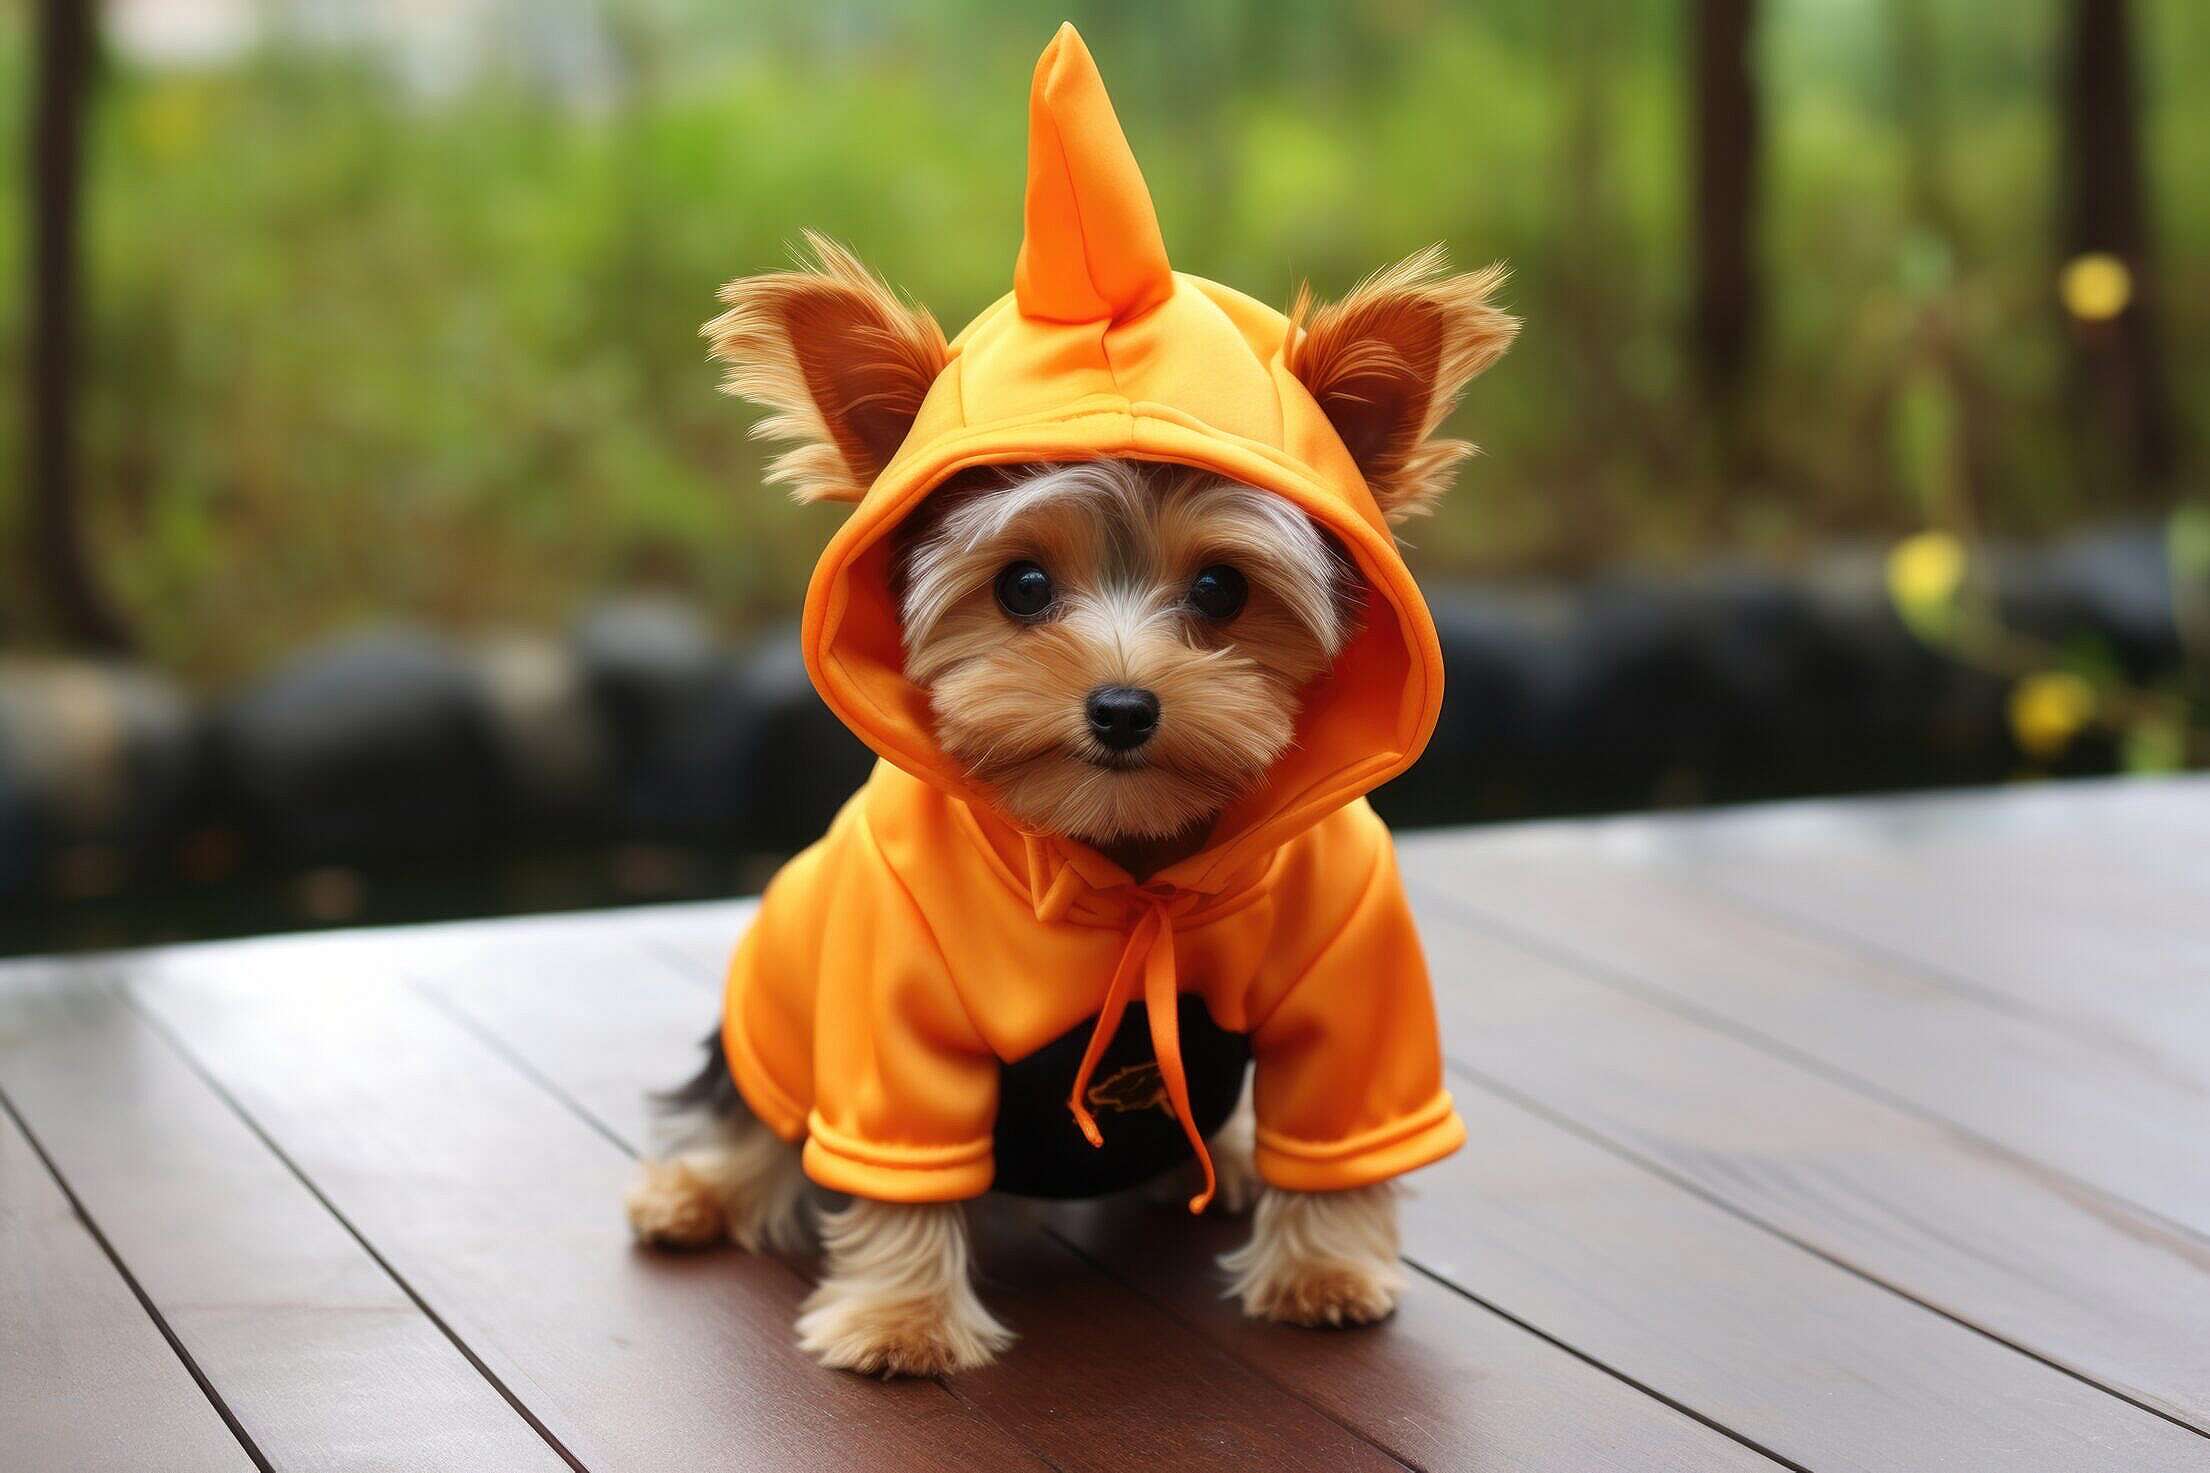 https://picjumbo.com/wp-content/uploads/cute-dog-in-halloween-costume-free-photo-2210x1473.jpg